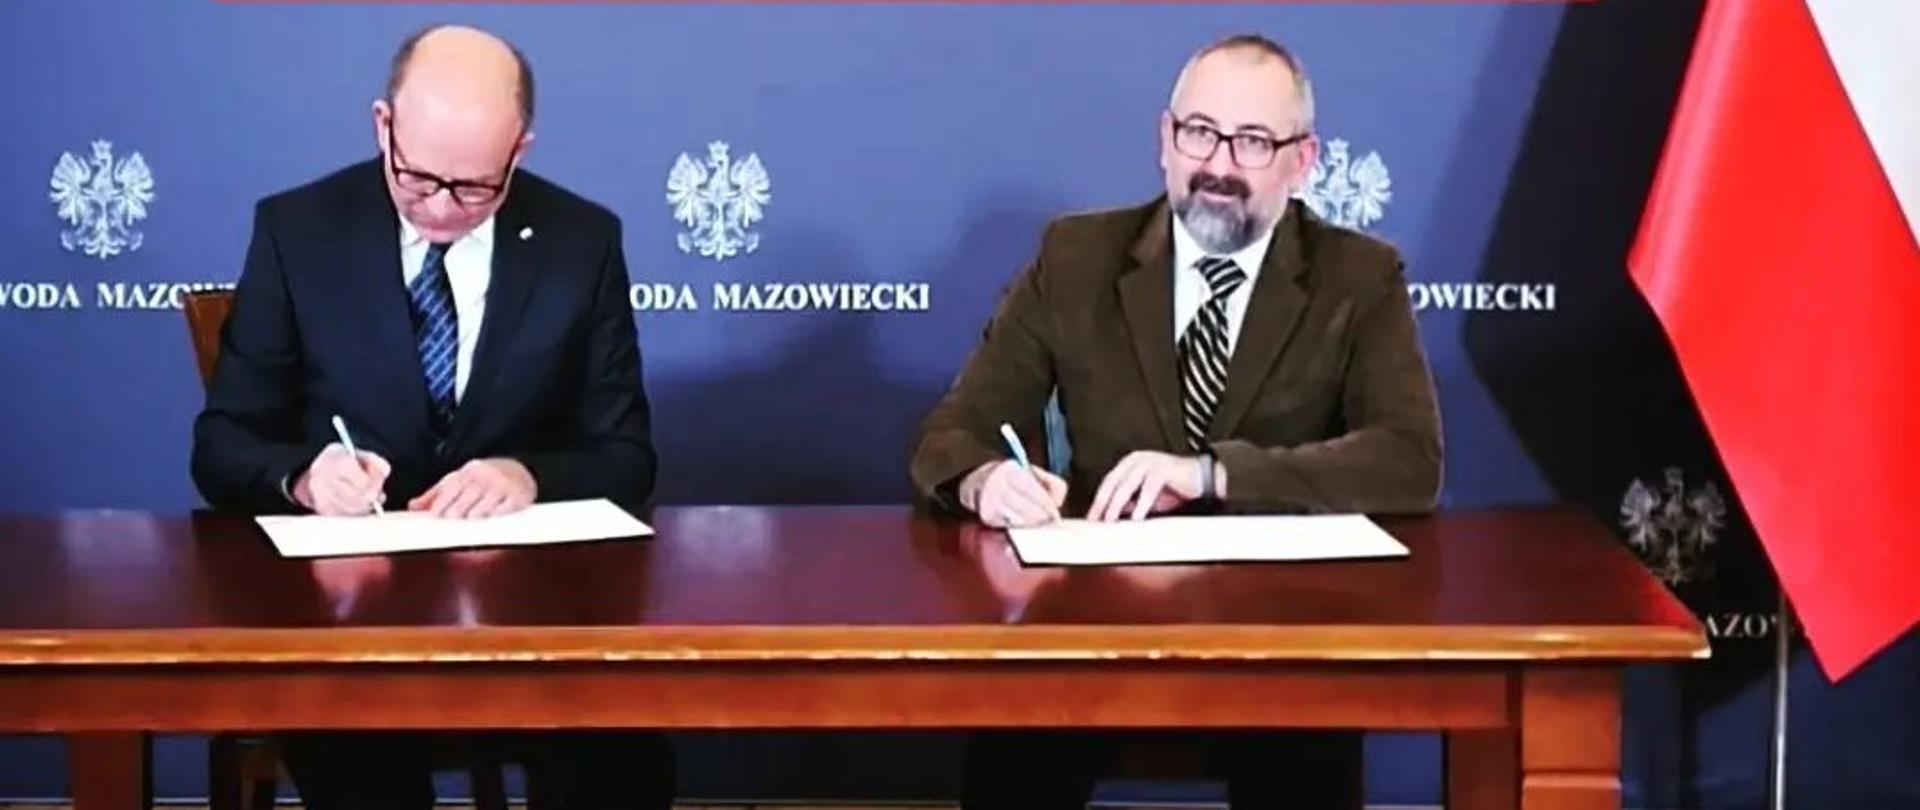 Zdjęcie przedstawia Wojewodę Mazowieckiego Konstantego Radziwiłła oraz Starostę Przasnyskiego Krzysztofa Bieńkowskiego podczas podpisywania umowy na dofinansowanie budowy kompleksu basenów otwartych w Przasnyszu.